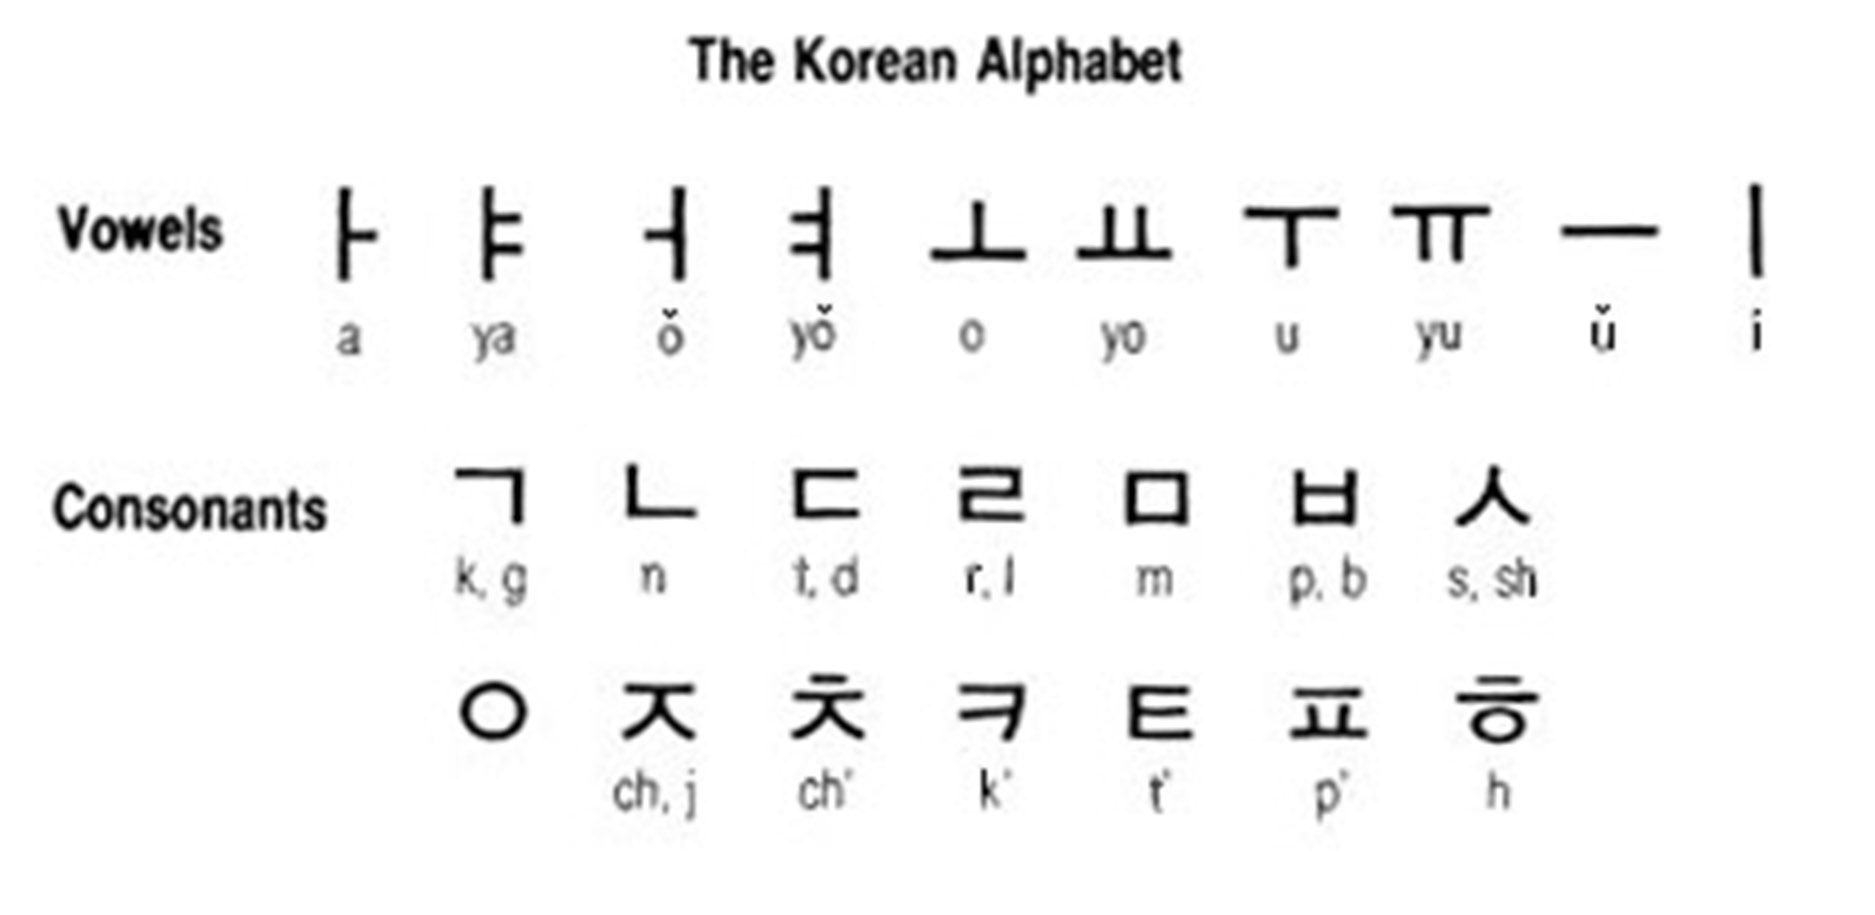 Корейский звучание. Корейский алфавит хангыль. Корейская письменность хангыль. Хангыль корейский алфавит с русской транскрипцией. Корейский алфавит с произношением.